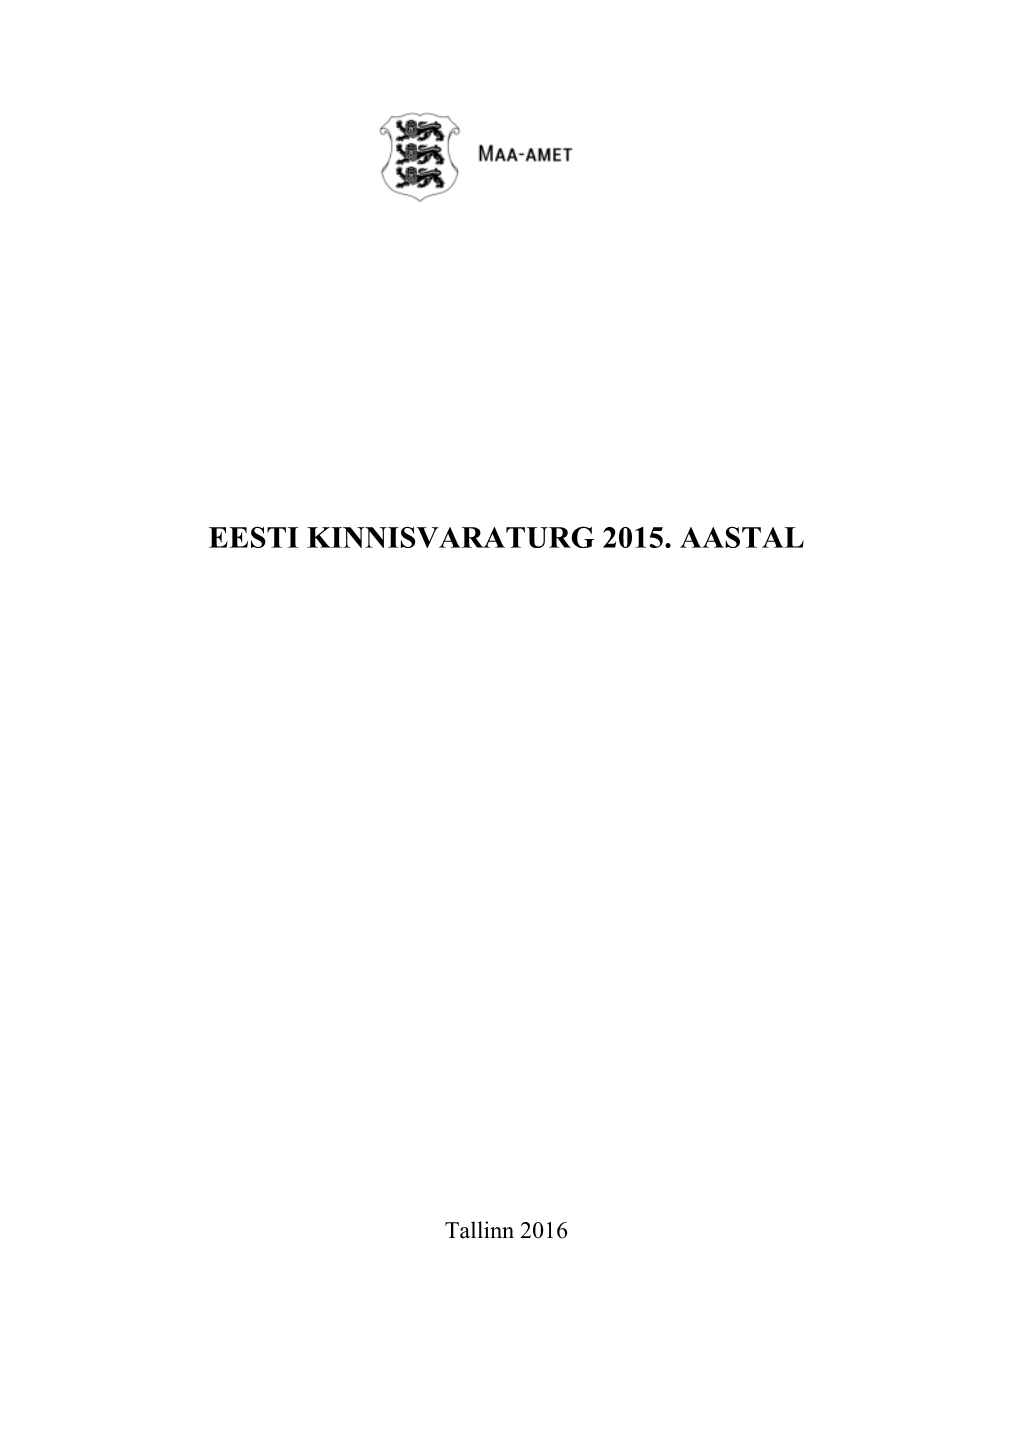 Eesti Kinnisvaraturg 2015. Aastal